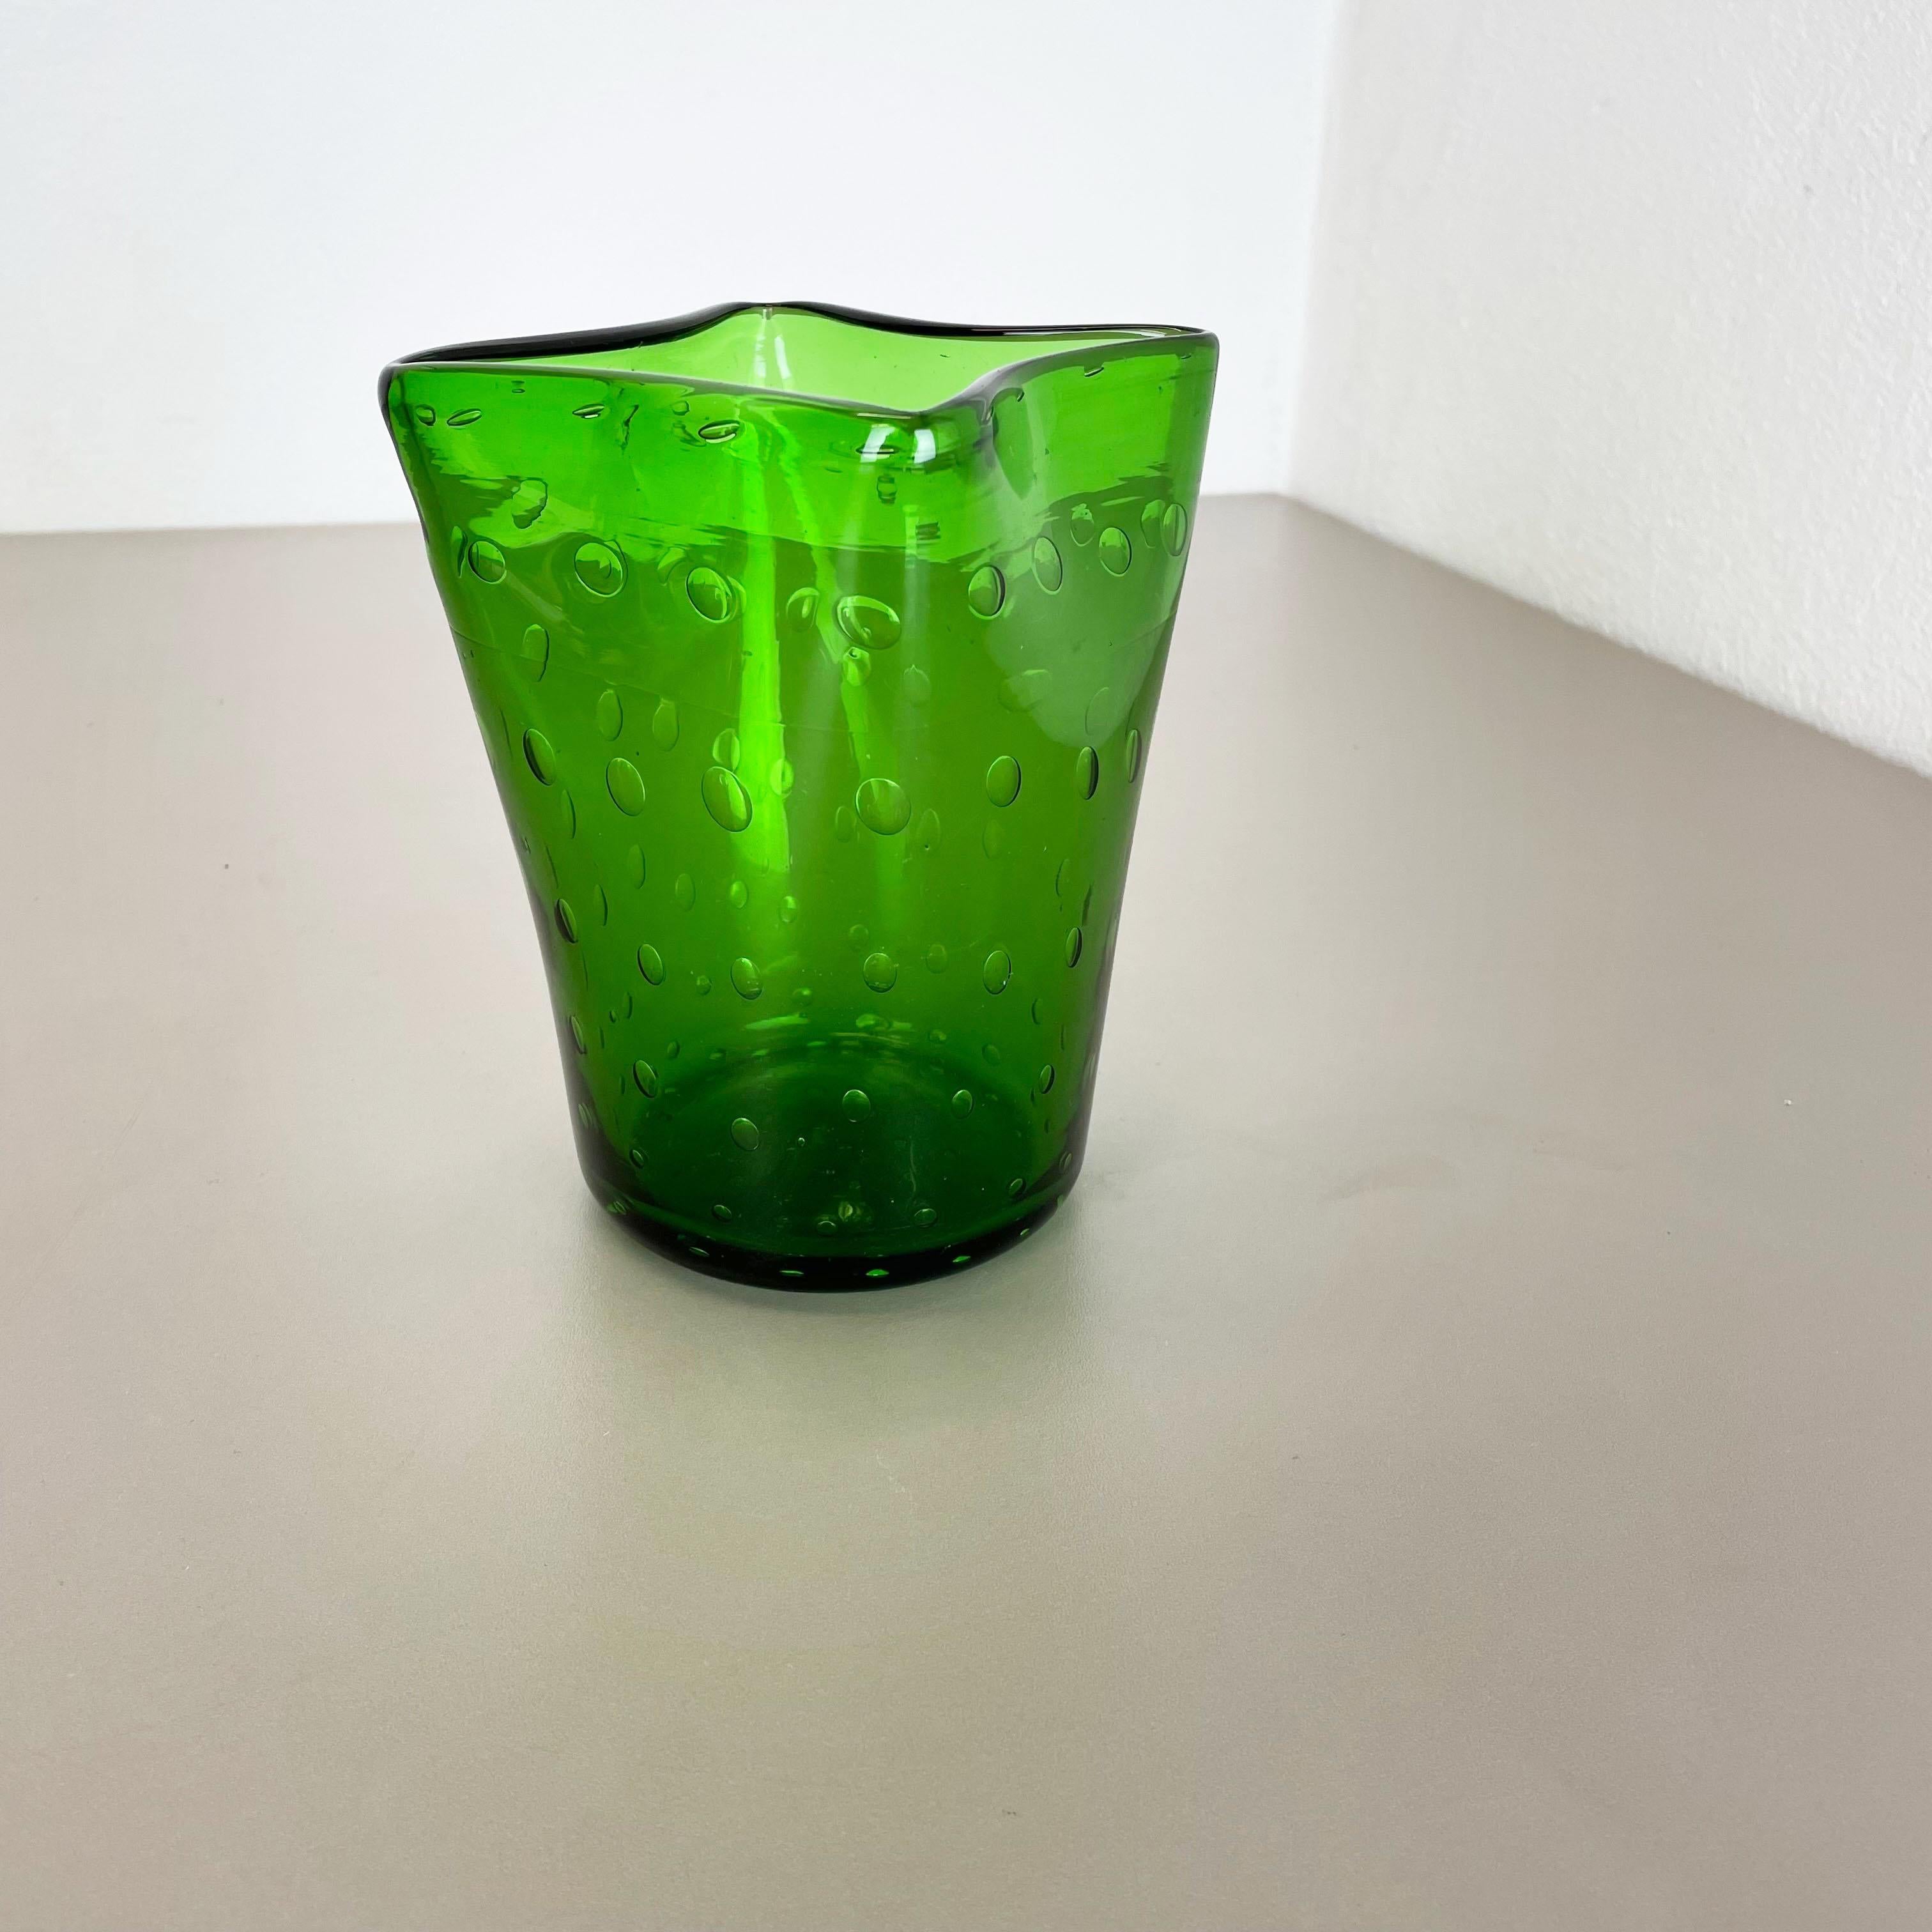 Artikel:

Murano Glas Vase Element


Herkunft:

Murano, Italien


Jahrzehnt:

1970s


Dieses originelle Glasvasen-Element wurde in den 1970er Jahren in Murano, Italien, hergestellt. Ein elegantes grünes Murano-Glaselement, bei dem die